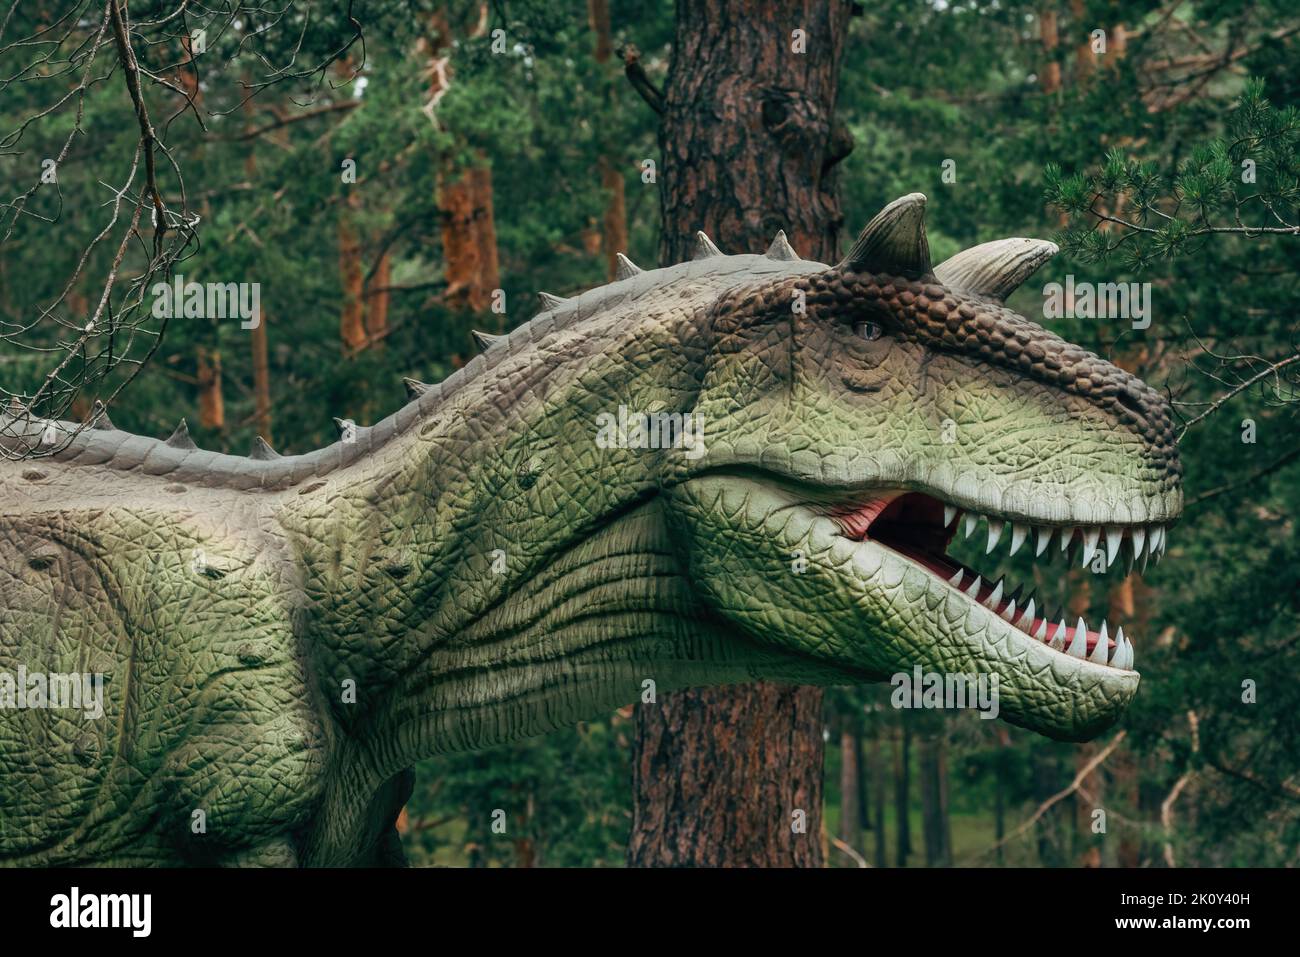 Carnotaurus Dinosaur réplique dans le parc à thème, dinosaure théropode qui vivait en Amérique du Sud pendant la période du Crétacé tardif Banque D'Images